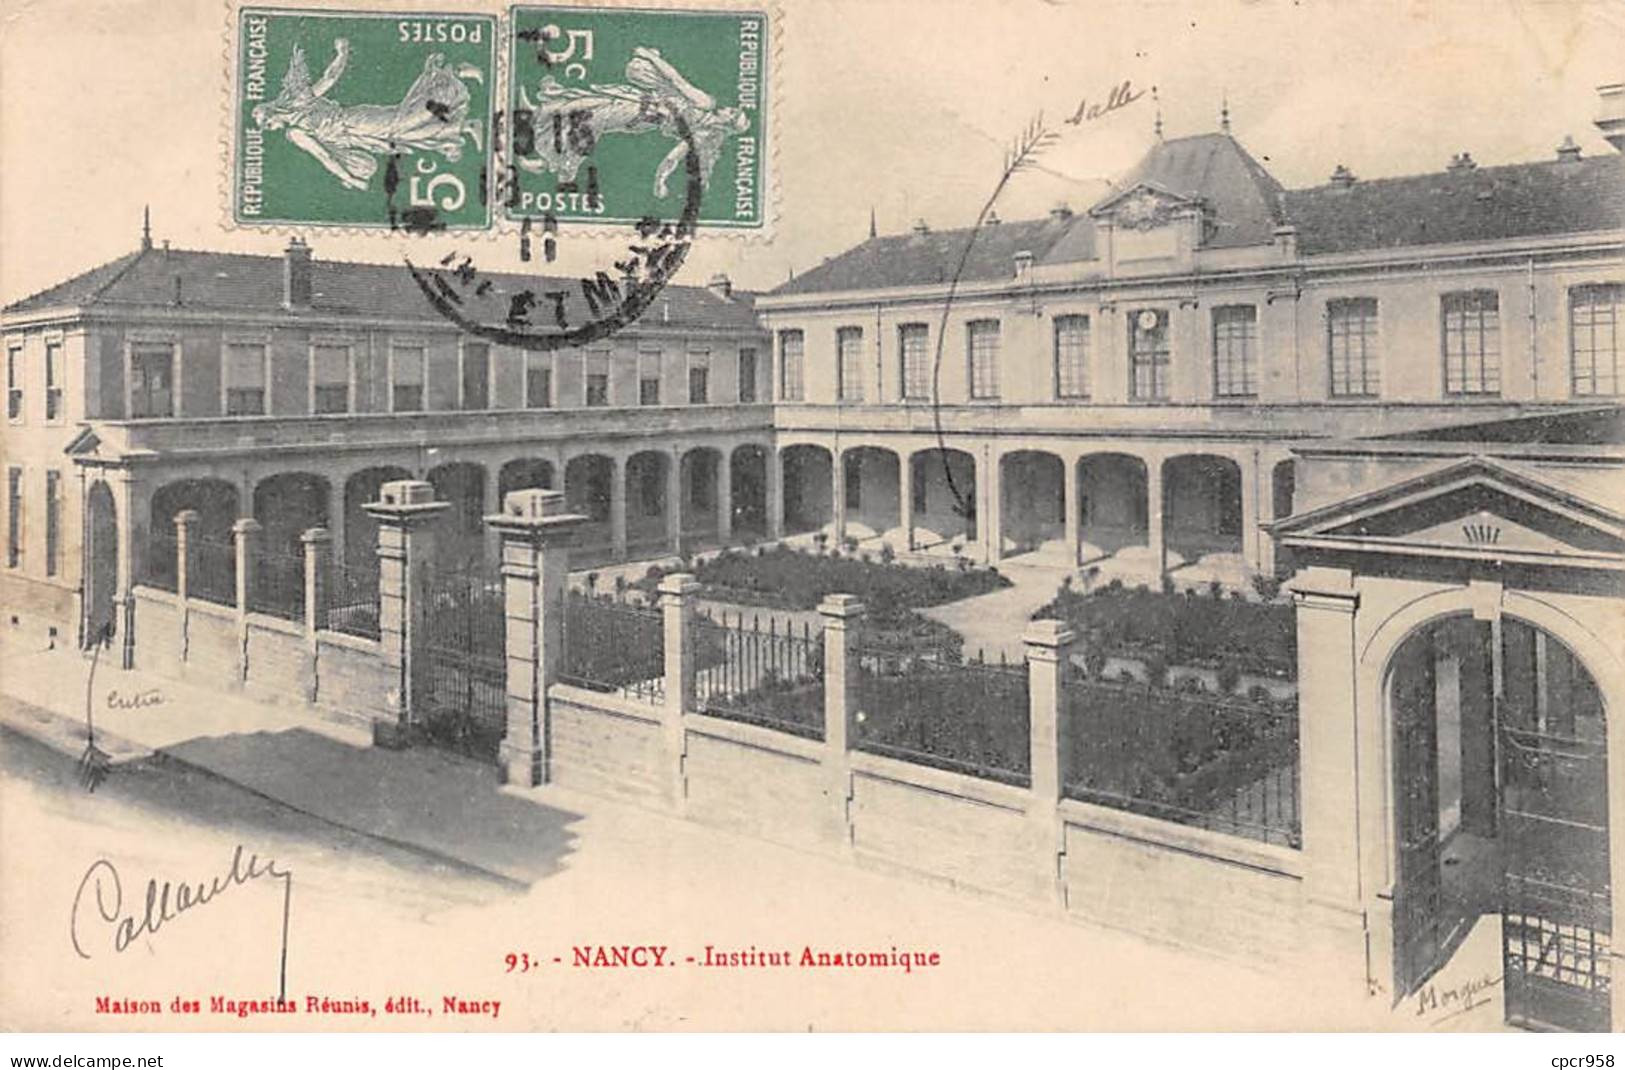 54-SAN59570-NANCY.Institut Anatomique - Nancy